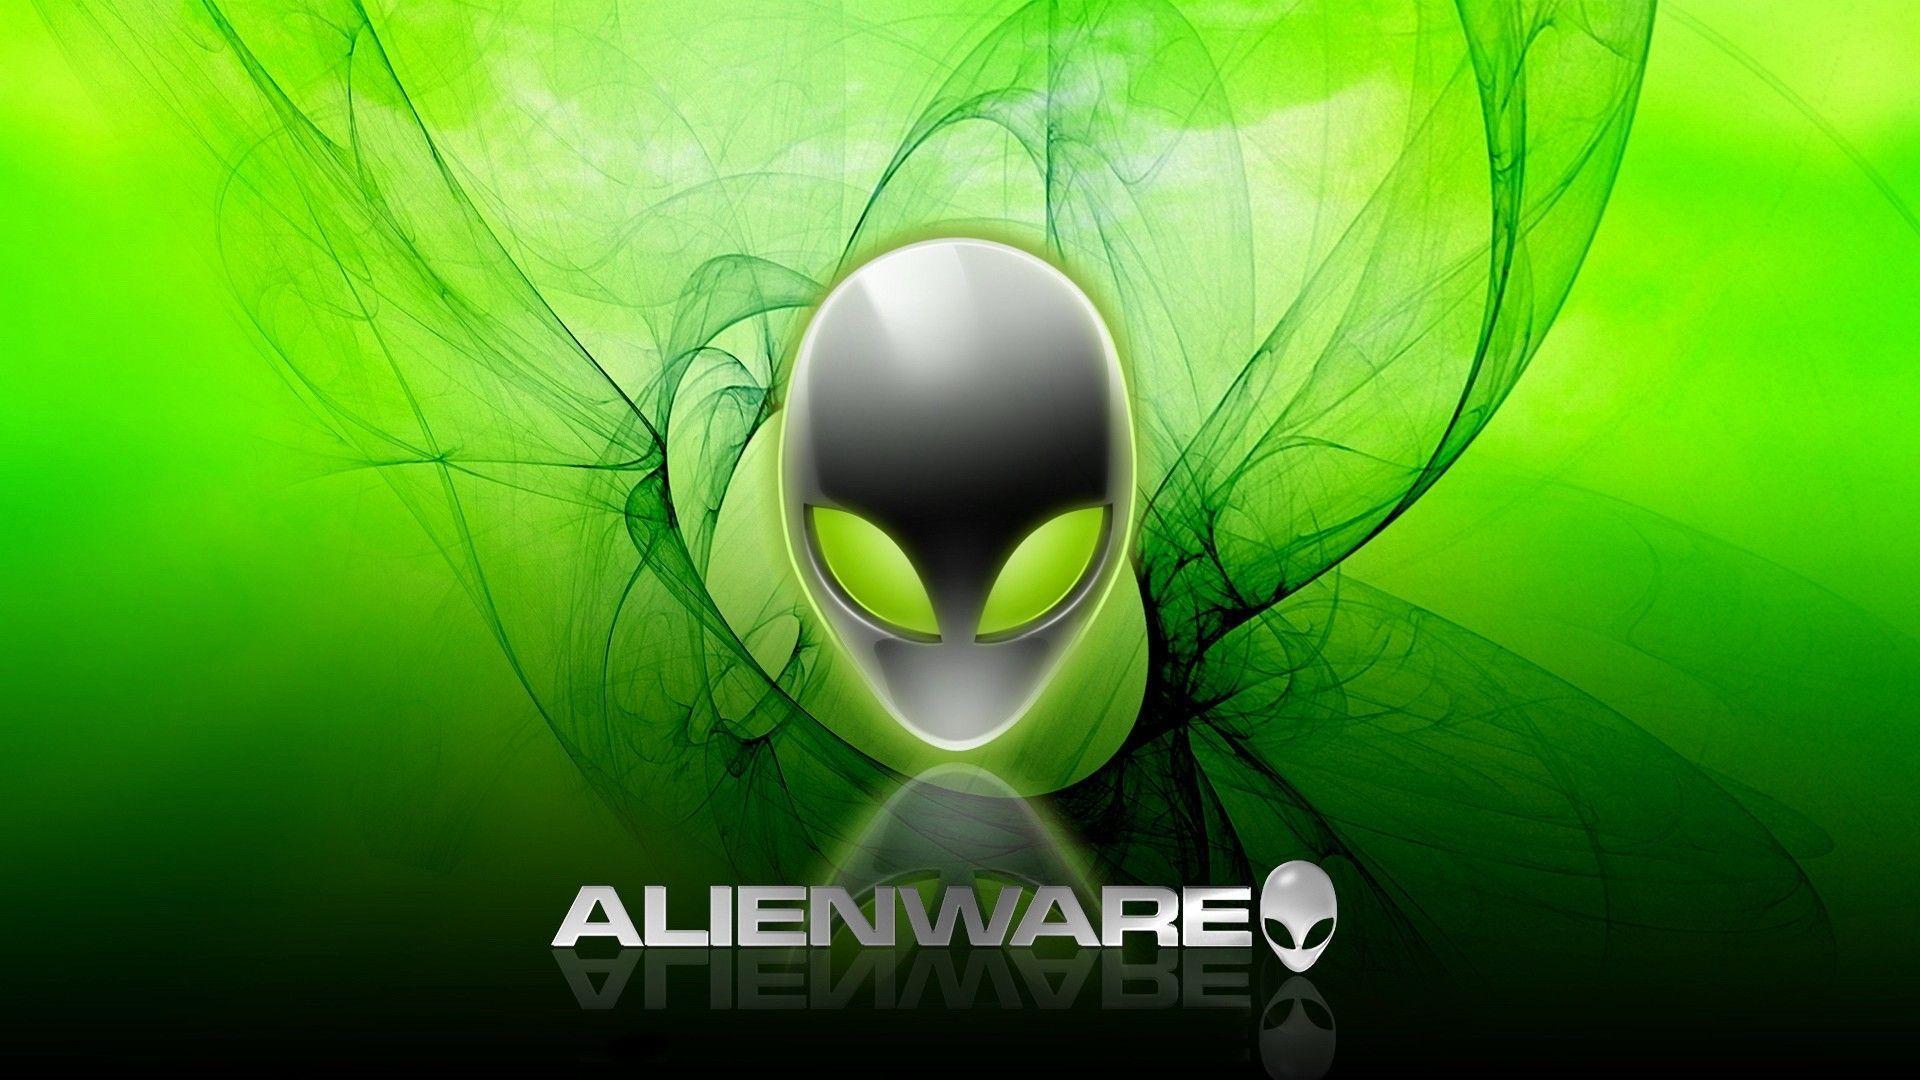 Alienware Wallpaper Pack